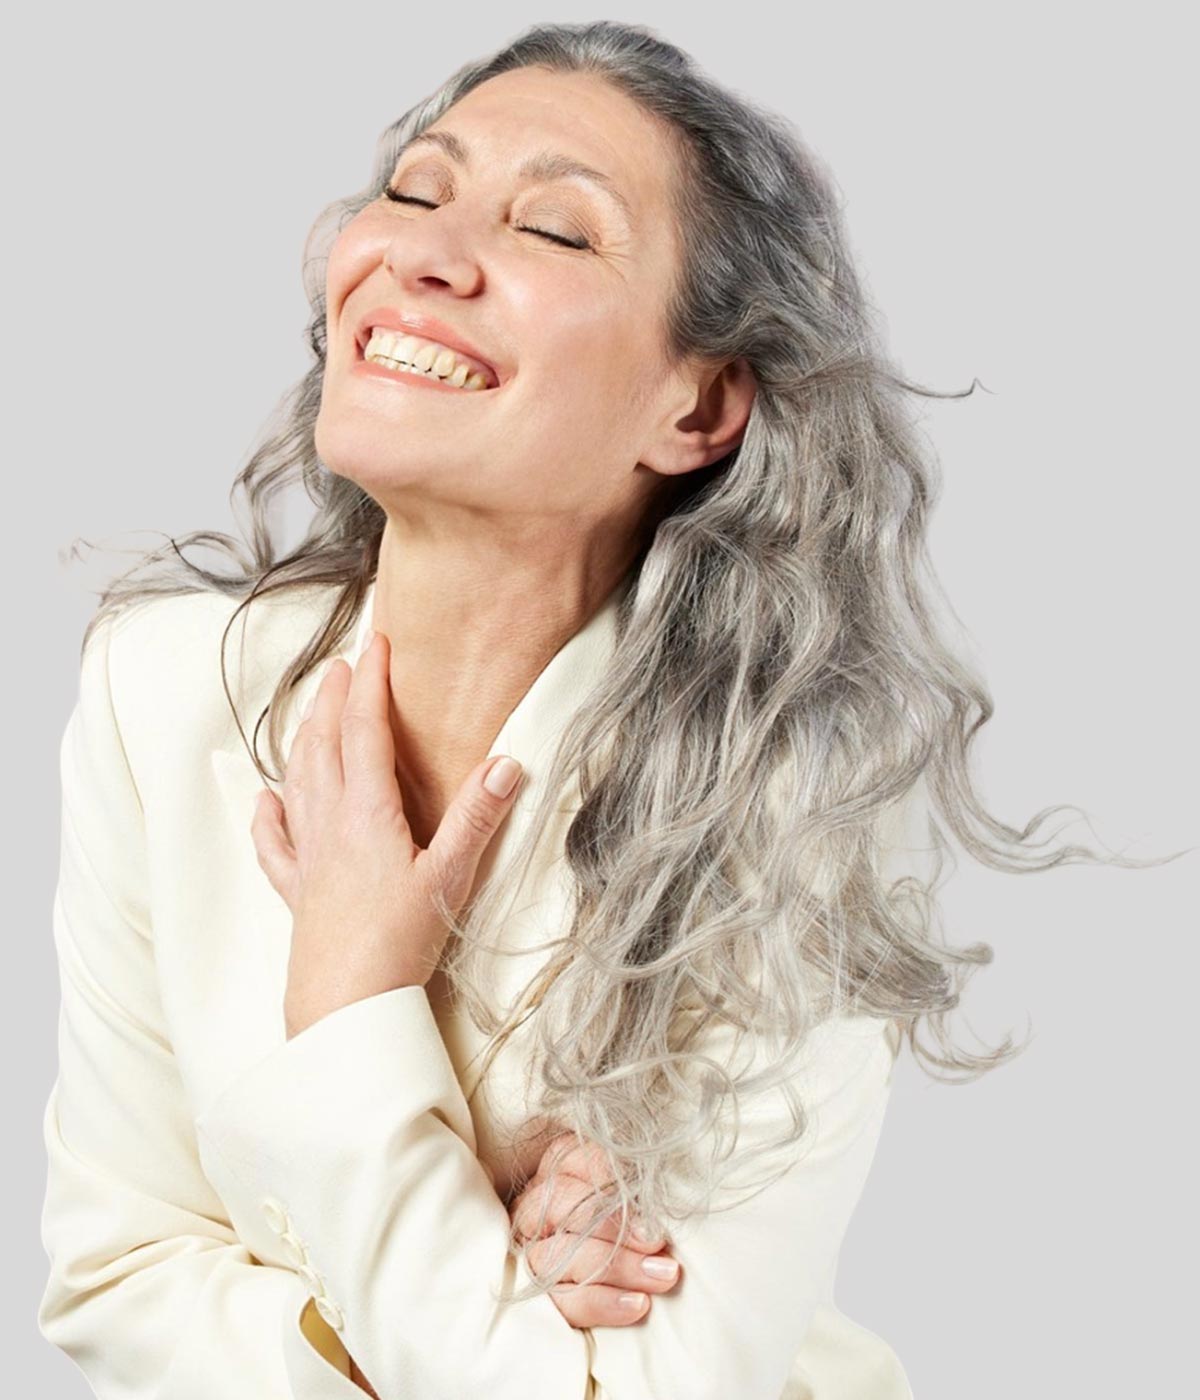 Tagli lunghi capelli ricci donna over 60